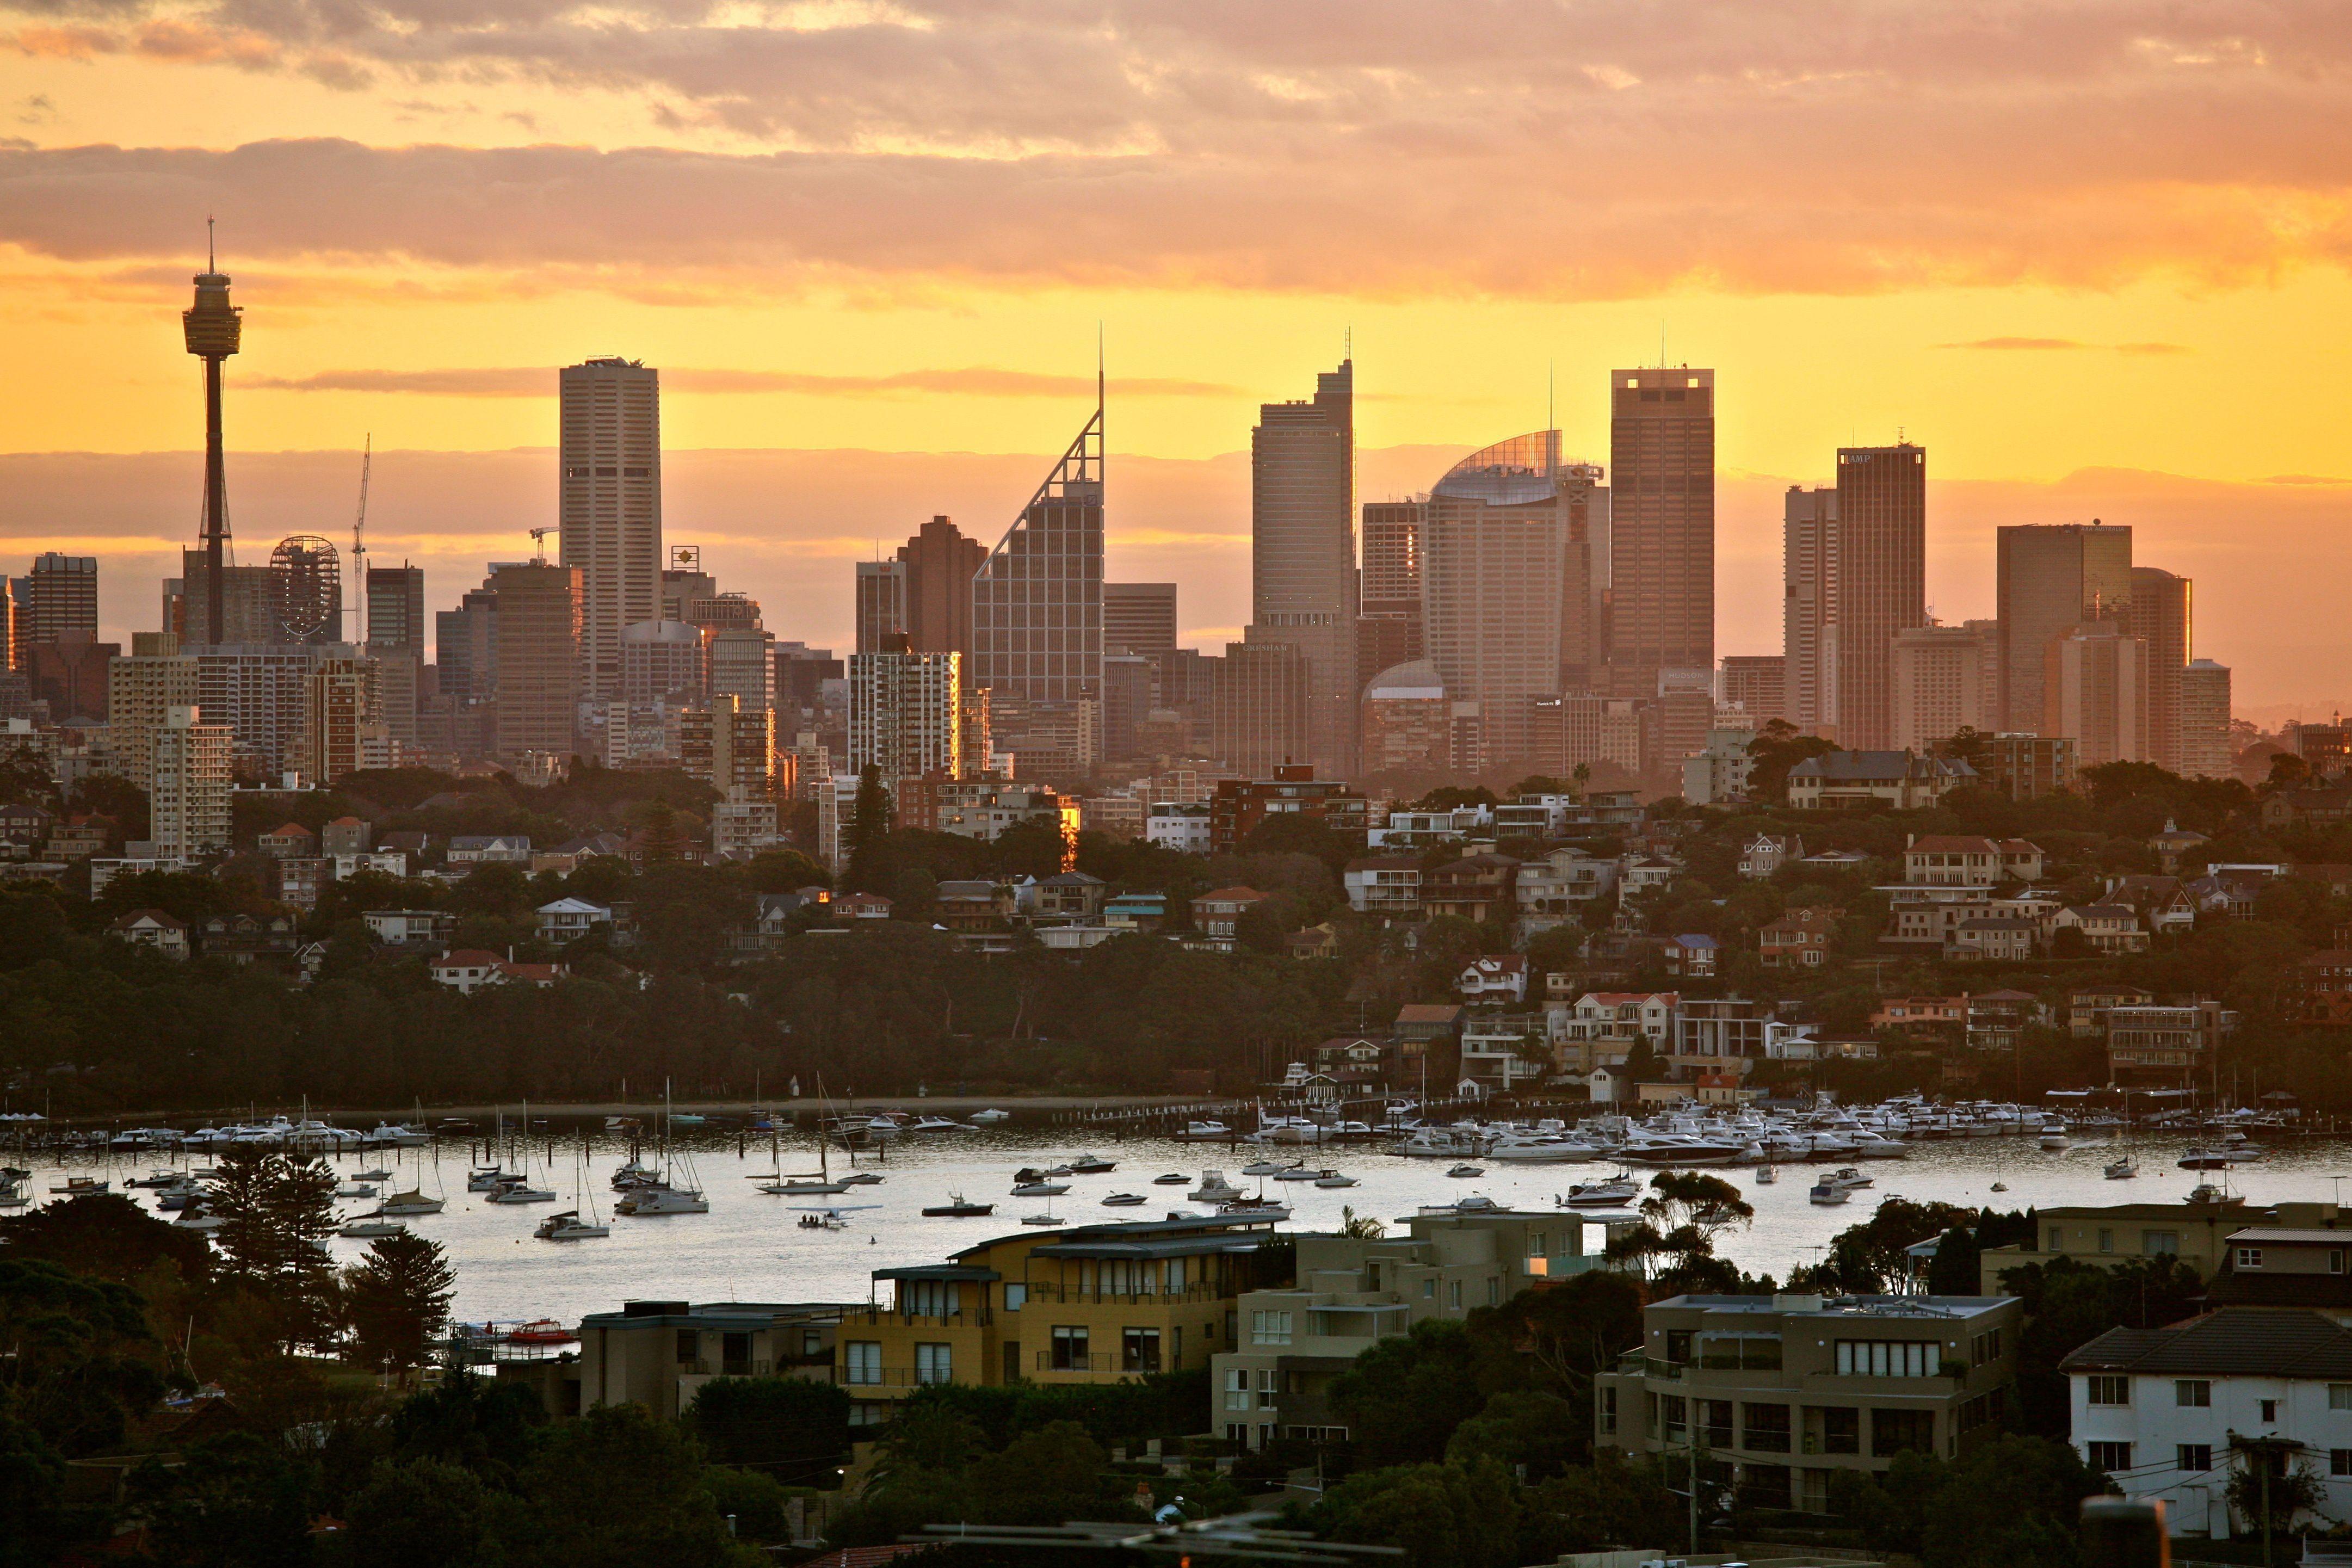 Sydney Skyline Wallpapers Top Free Sydney Skyline Backgrounds